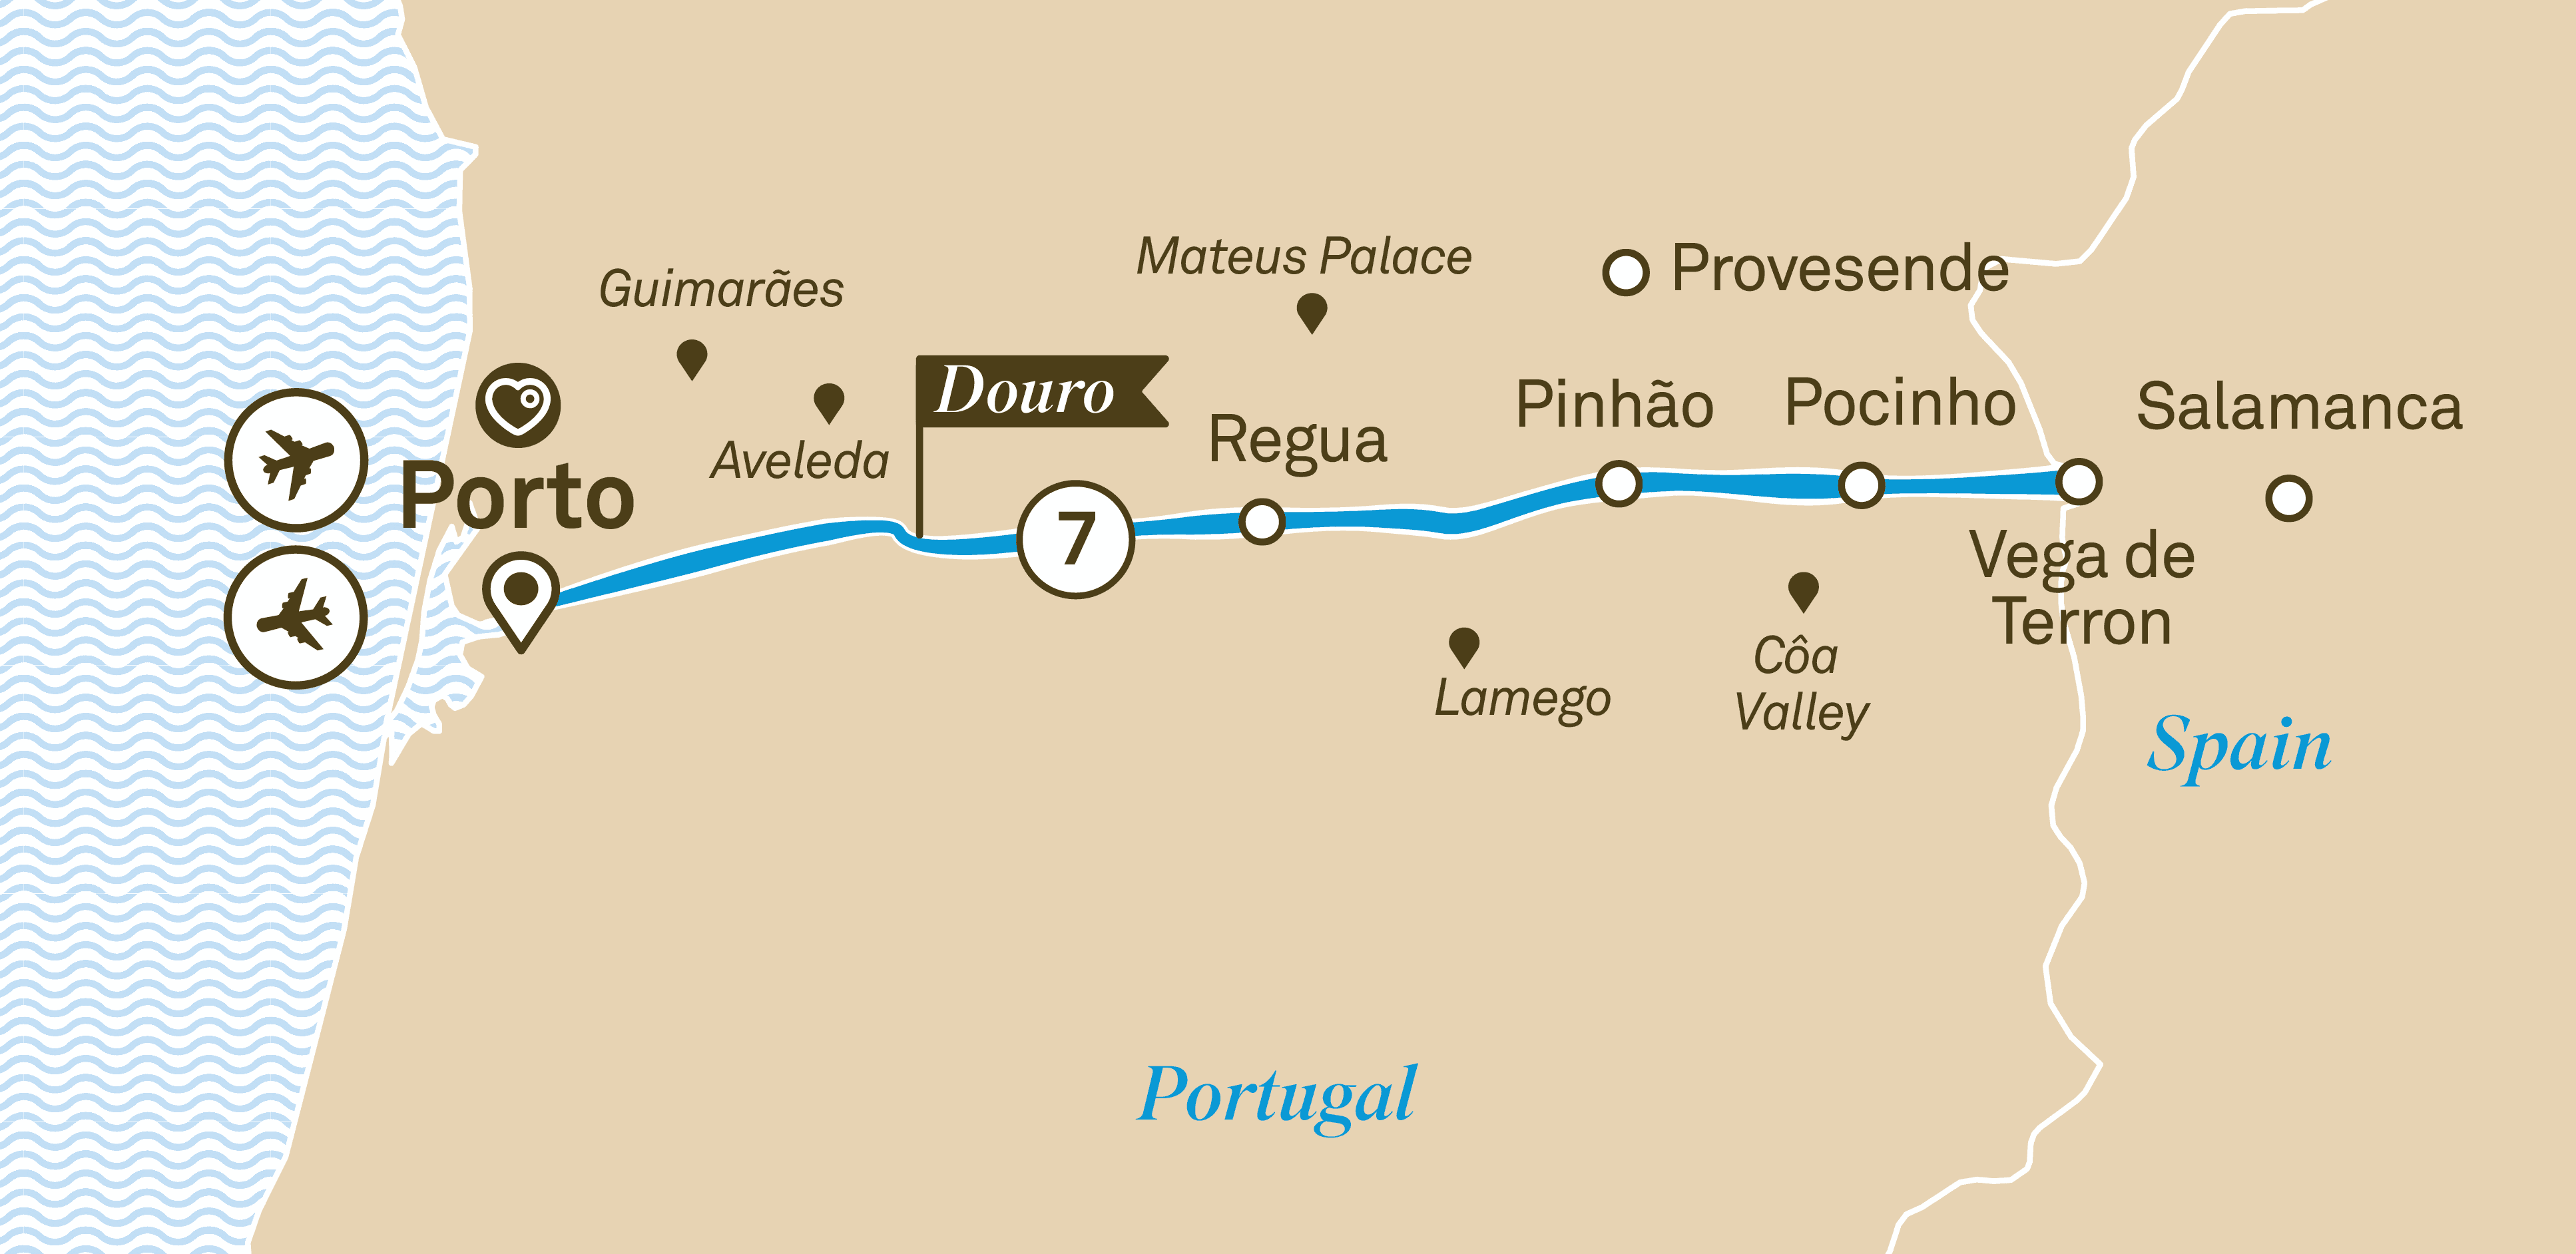 Delightful Douro 2019 Scenic River Cruise